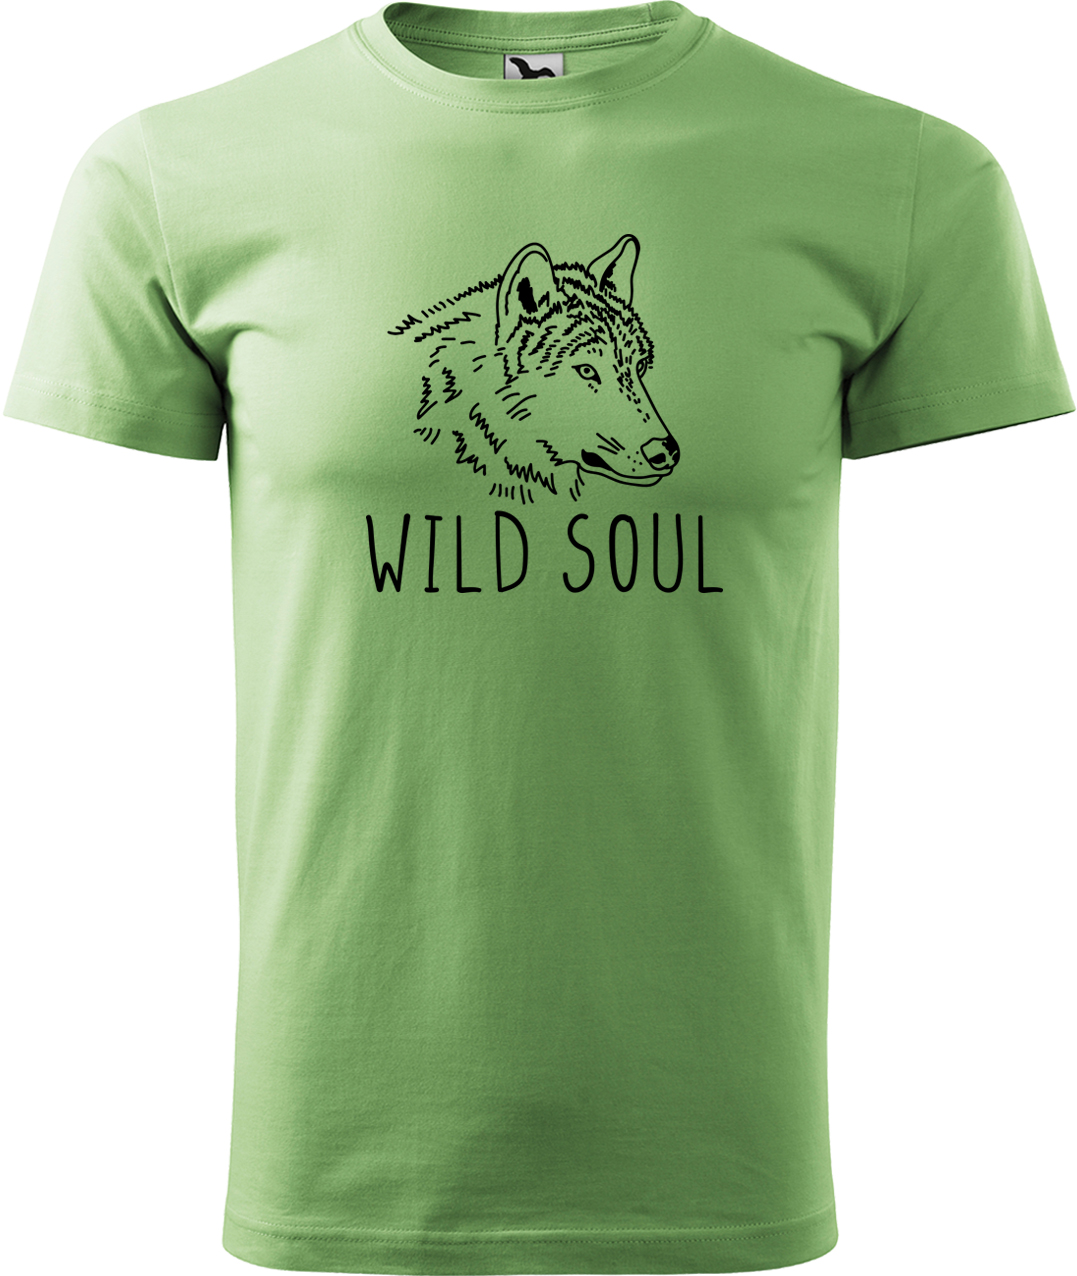 Pánské tričko s vlkem - Wild soul Velikost: S, Barva: Trávově zelená (39), Střih: pánský